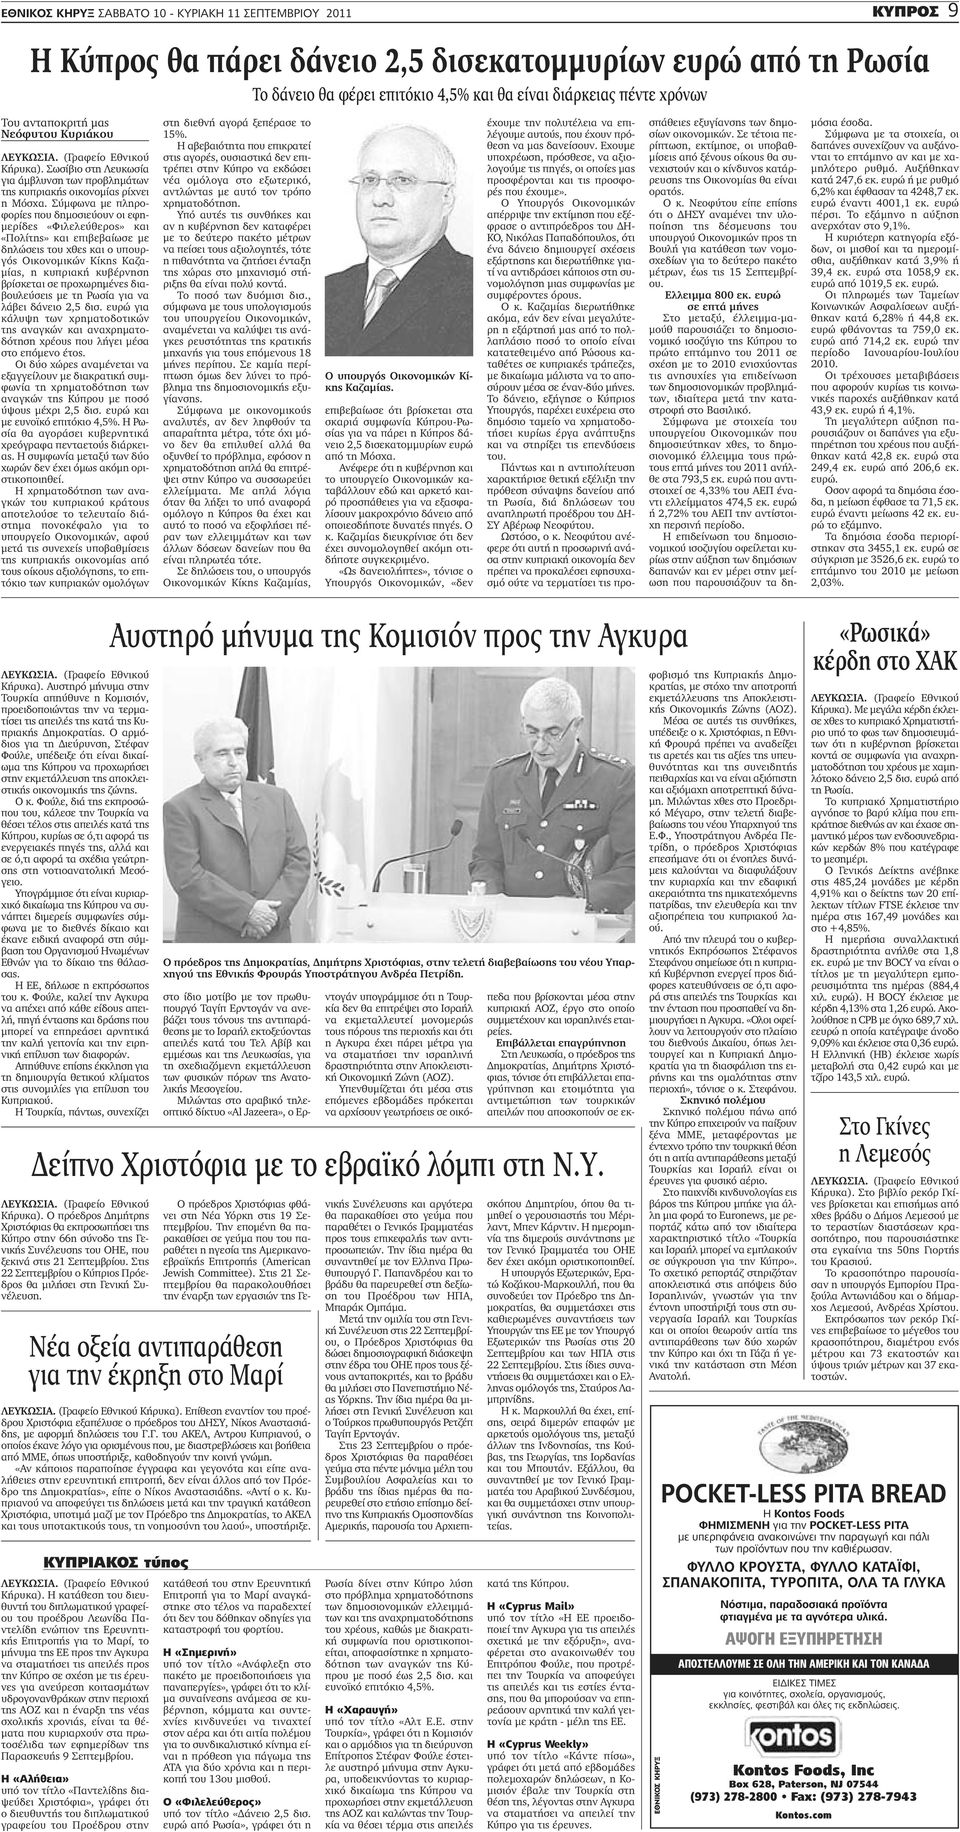 Σύμφωνα με πληροφορίες που δημοσιεύουν οι εφημερίδες «Φιλελεύθερος» και «Πολίτης» και επιβεβαίωσε με δηλώσεις του χθες και ο υπουργός Οικονομικών Κίκης Καζαμίας, η κυπριακή κυβέρνηση βρίσκεται σε